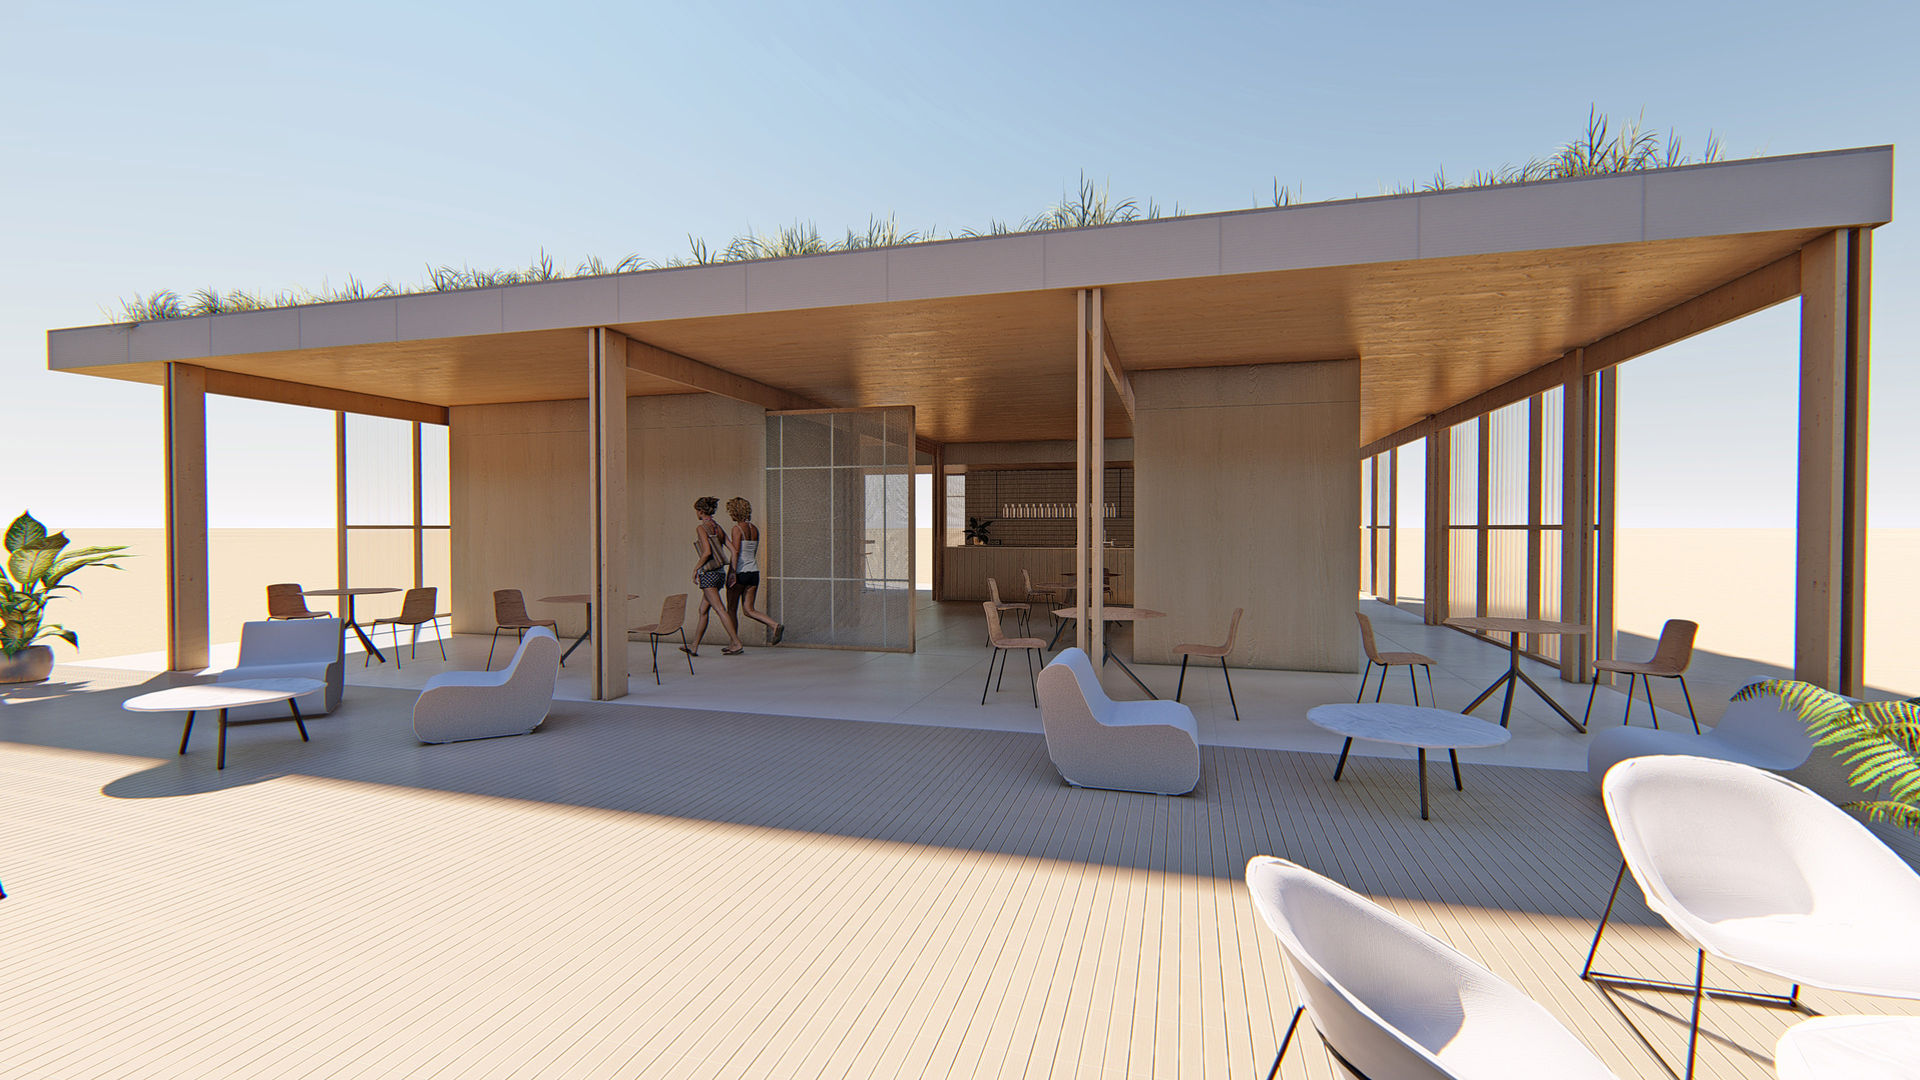 Eficiente energéticamente Arquitectura Sostenible e Interiorismo | a-nat Casas de madera chiringuito, madera, sostenible, cubierta verde